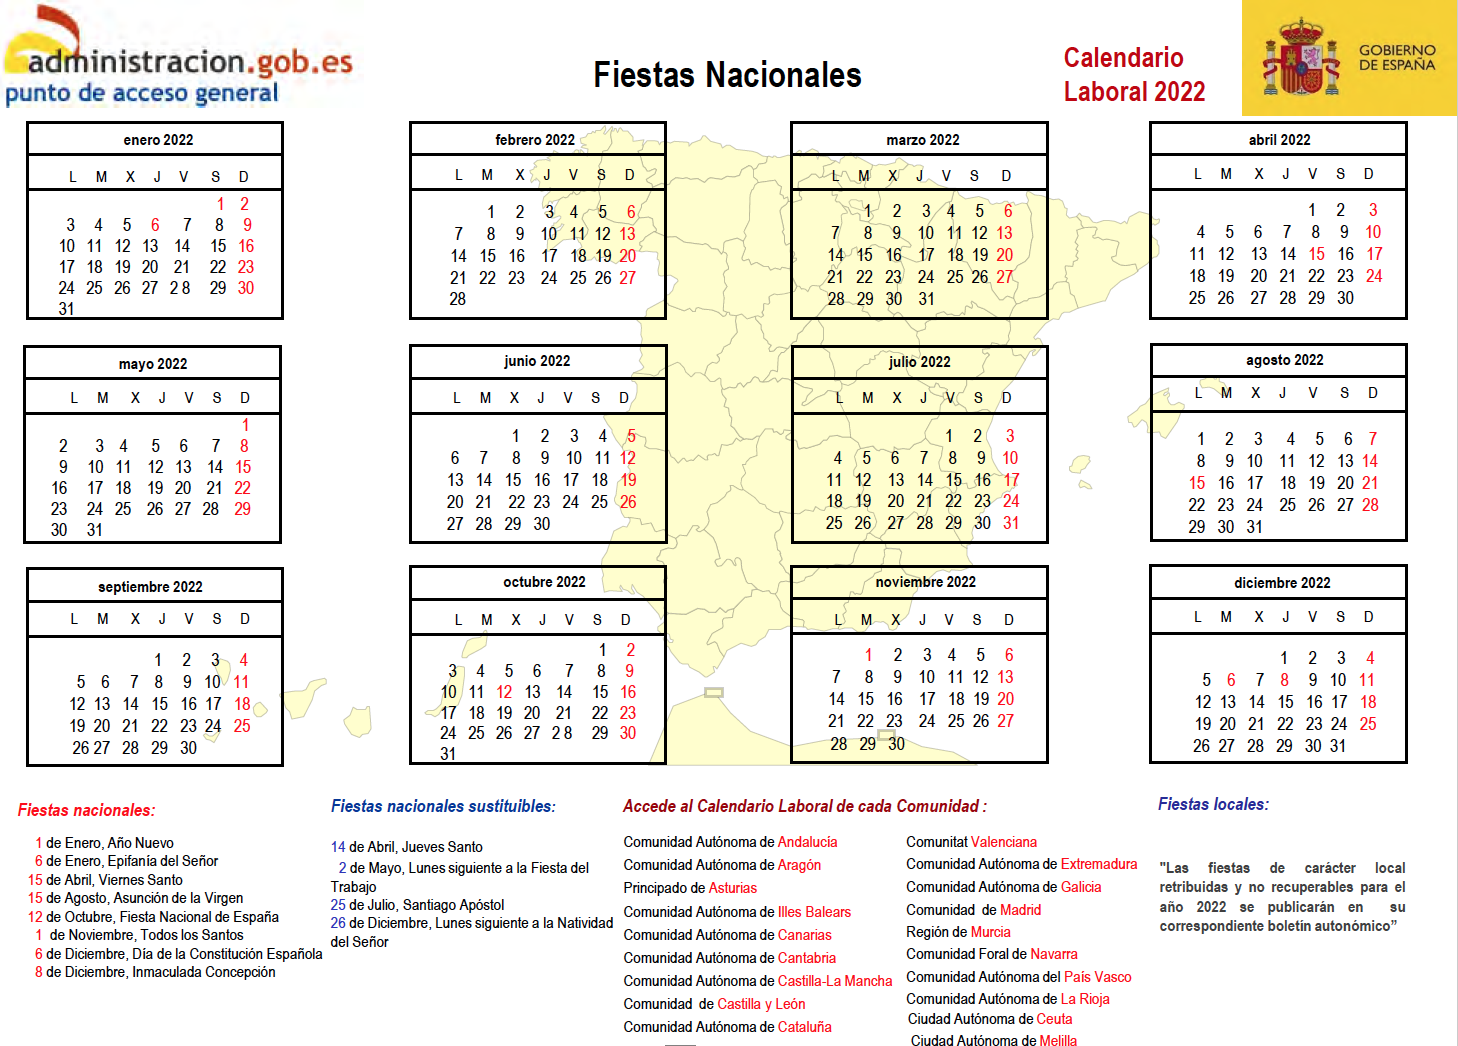 Fiestas Nacionales 2022